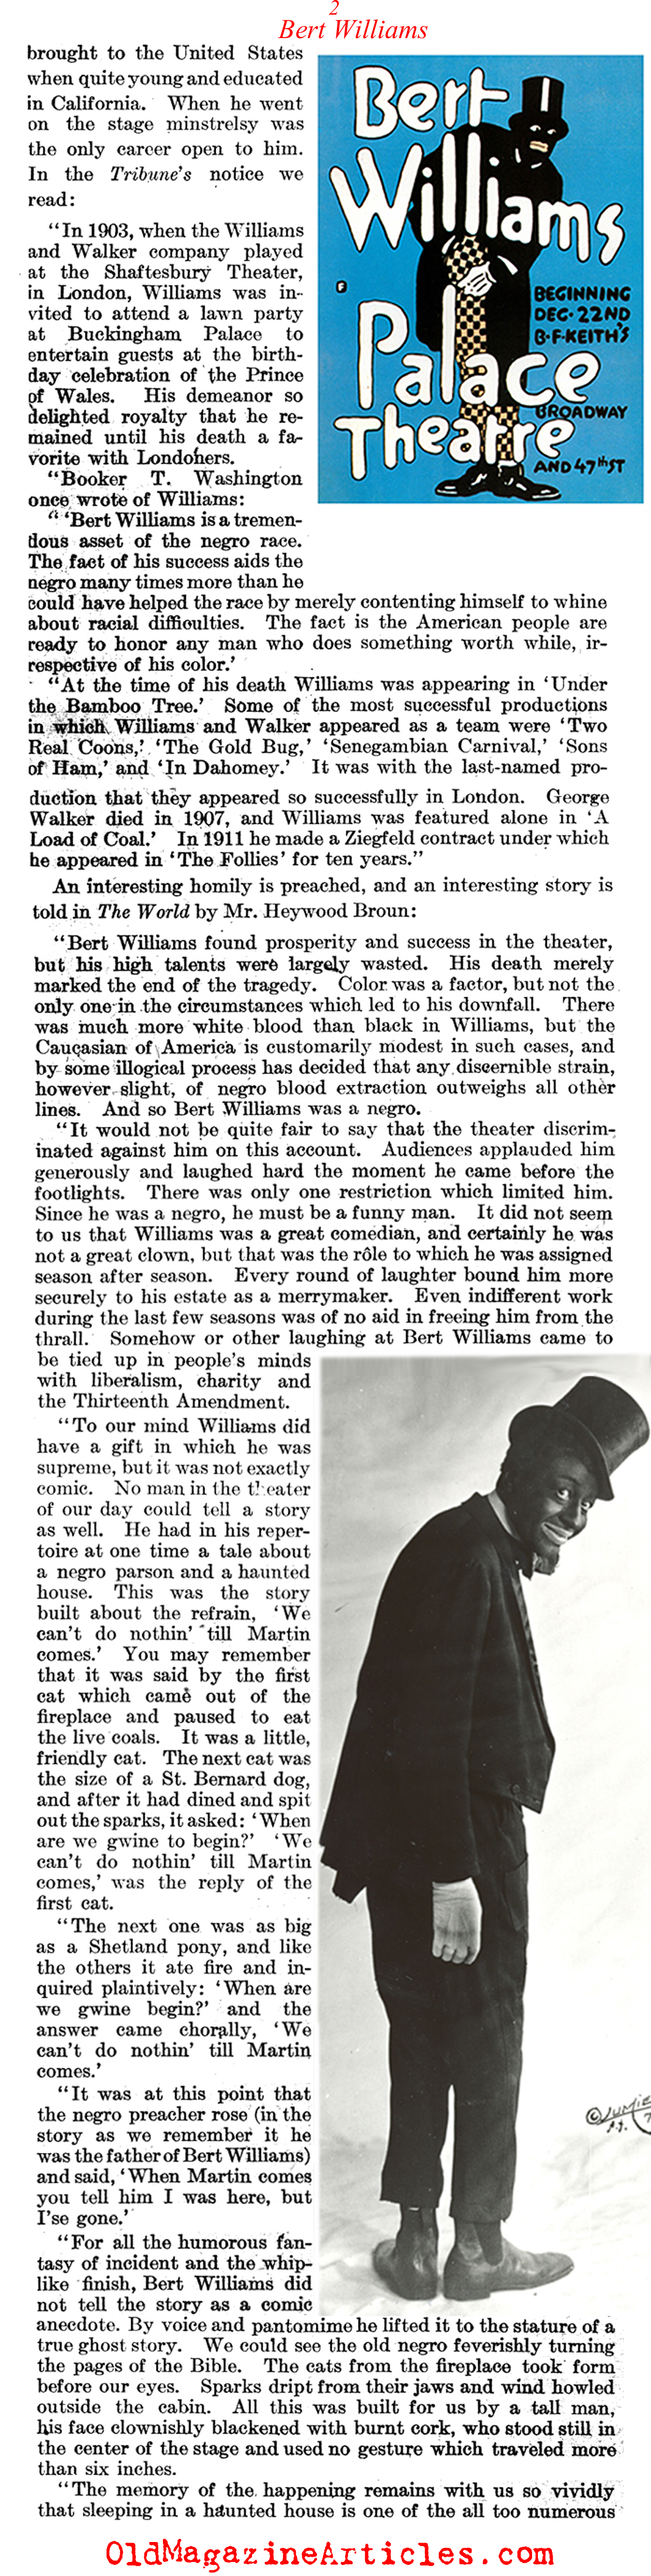 Comedian Bert Williams: R.I.P.   (Literary Digest, 1922)